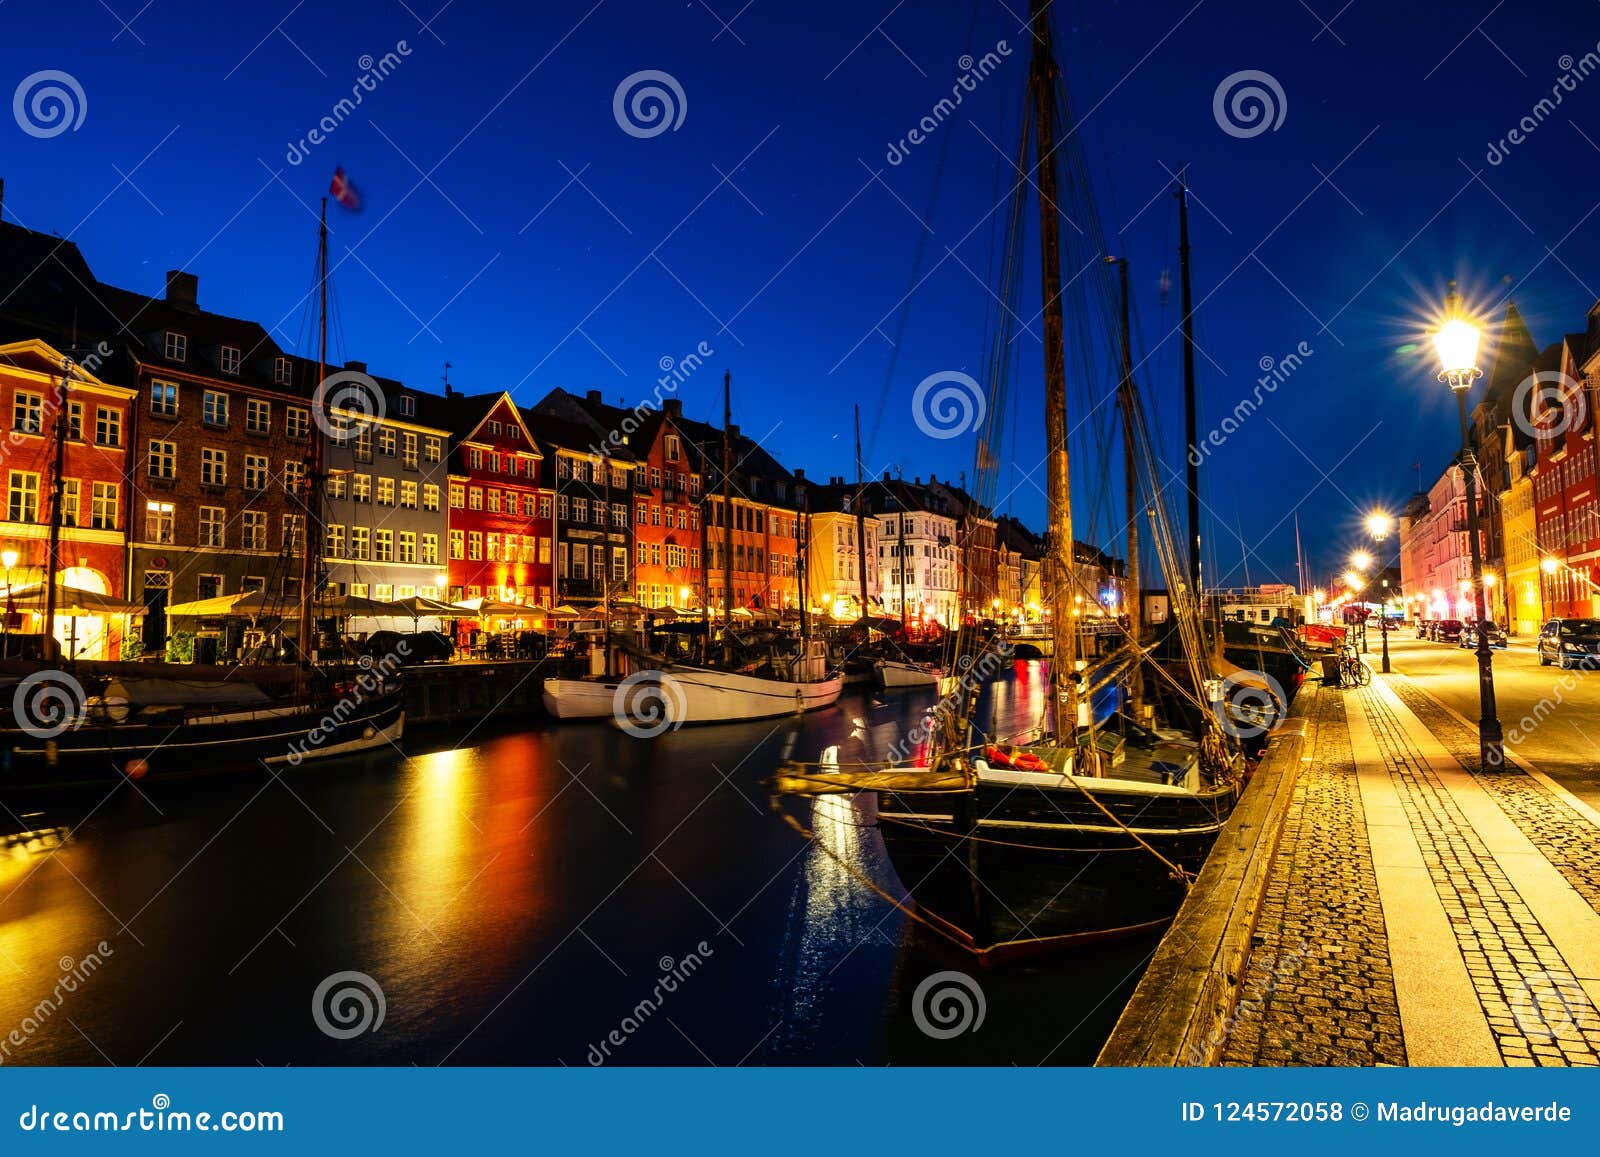 Mornig View of Famous Nyhavn Area in the Center of Copenhagen, Denmark ...